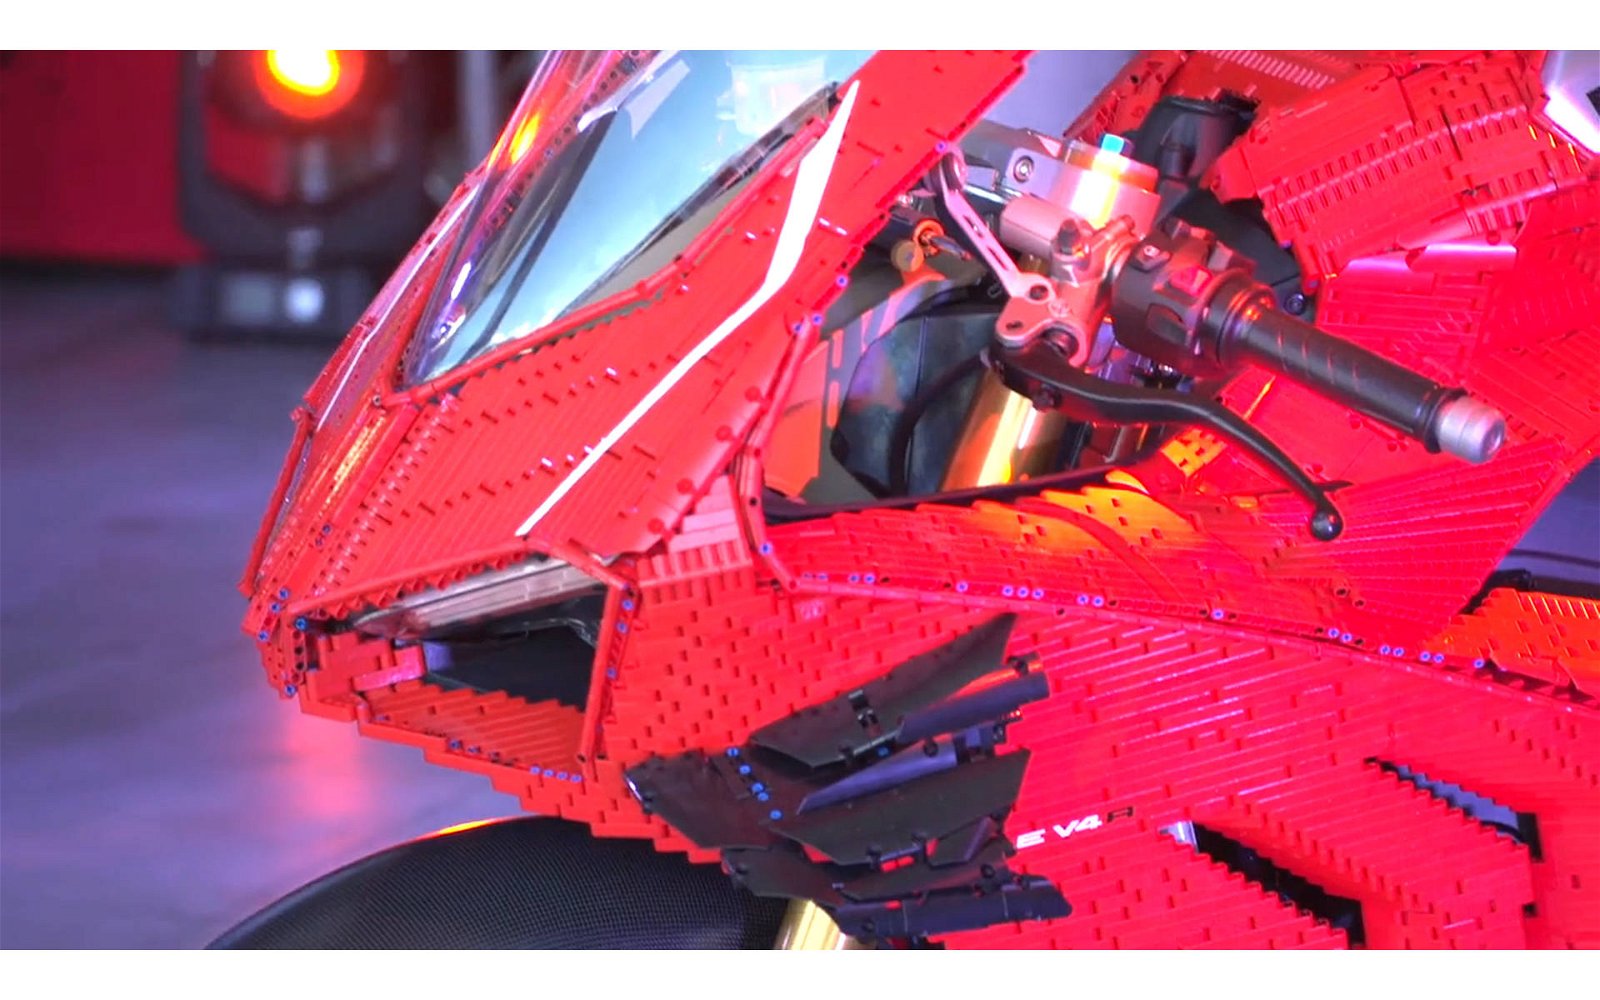 Immagine di LEGO:  la Ducati Panigale V4 R 1:1 costruita con i mattoncini LEGO Technic